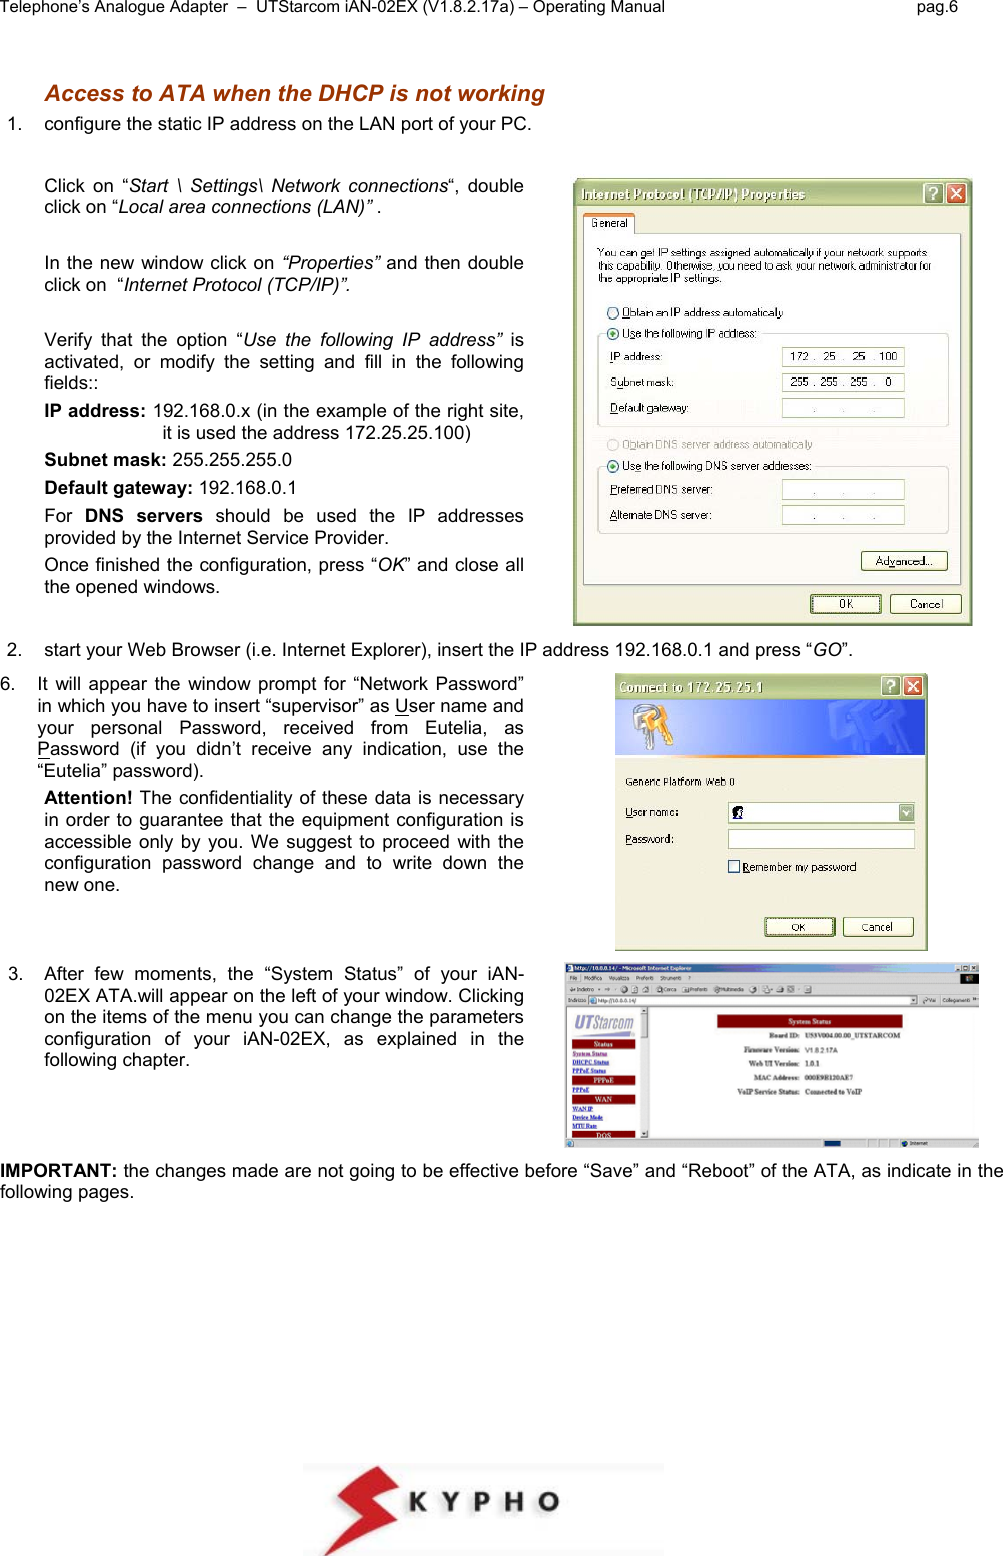 Utstarcom Ian 02Ex Users Manual Vip3002 Rev.2